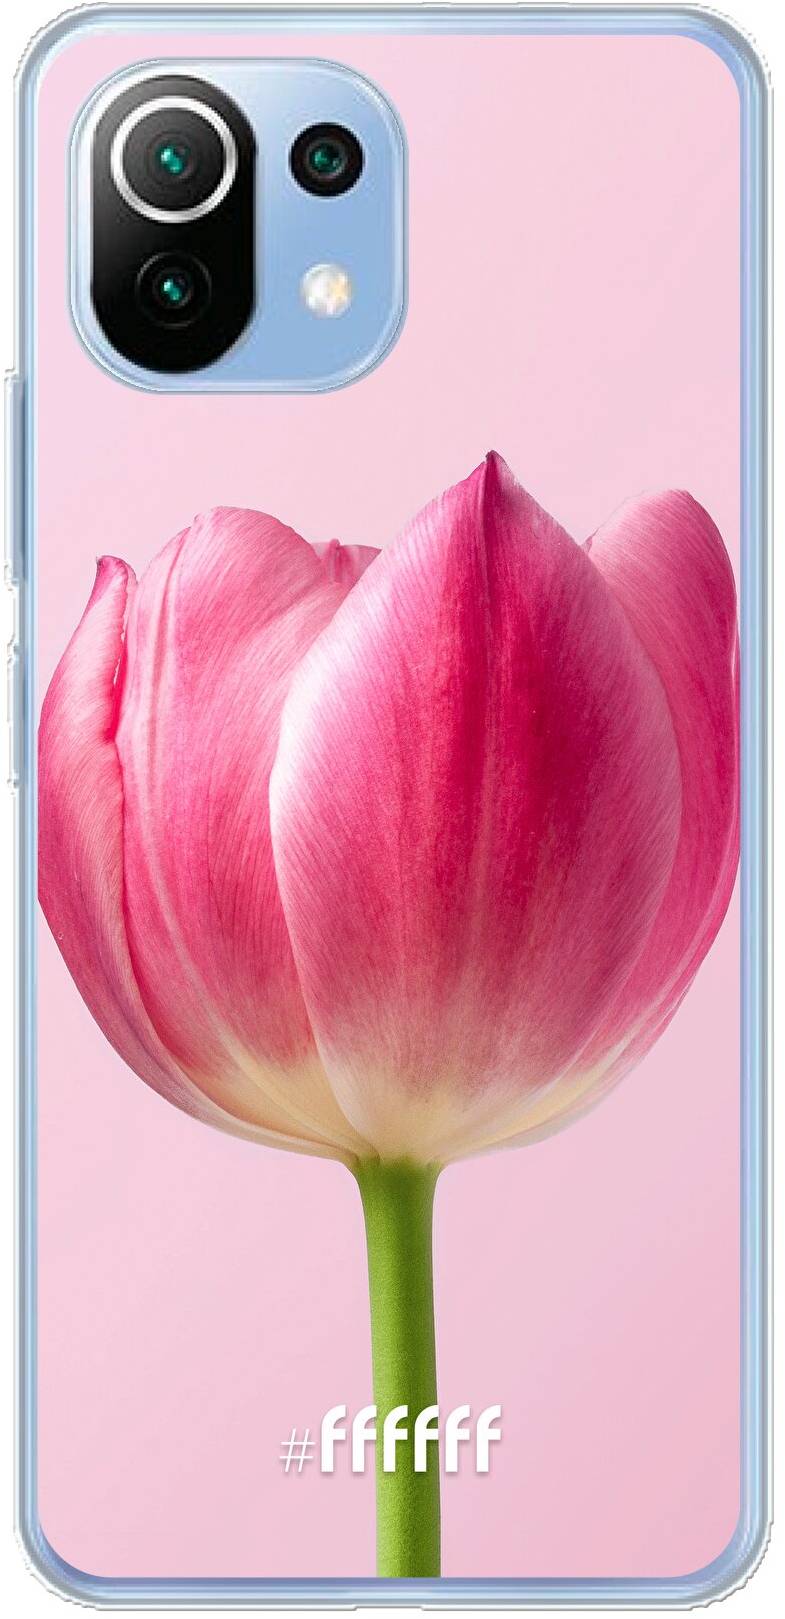 Pink Tulip Mi 11 Lite